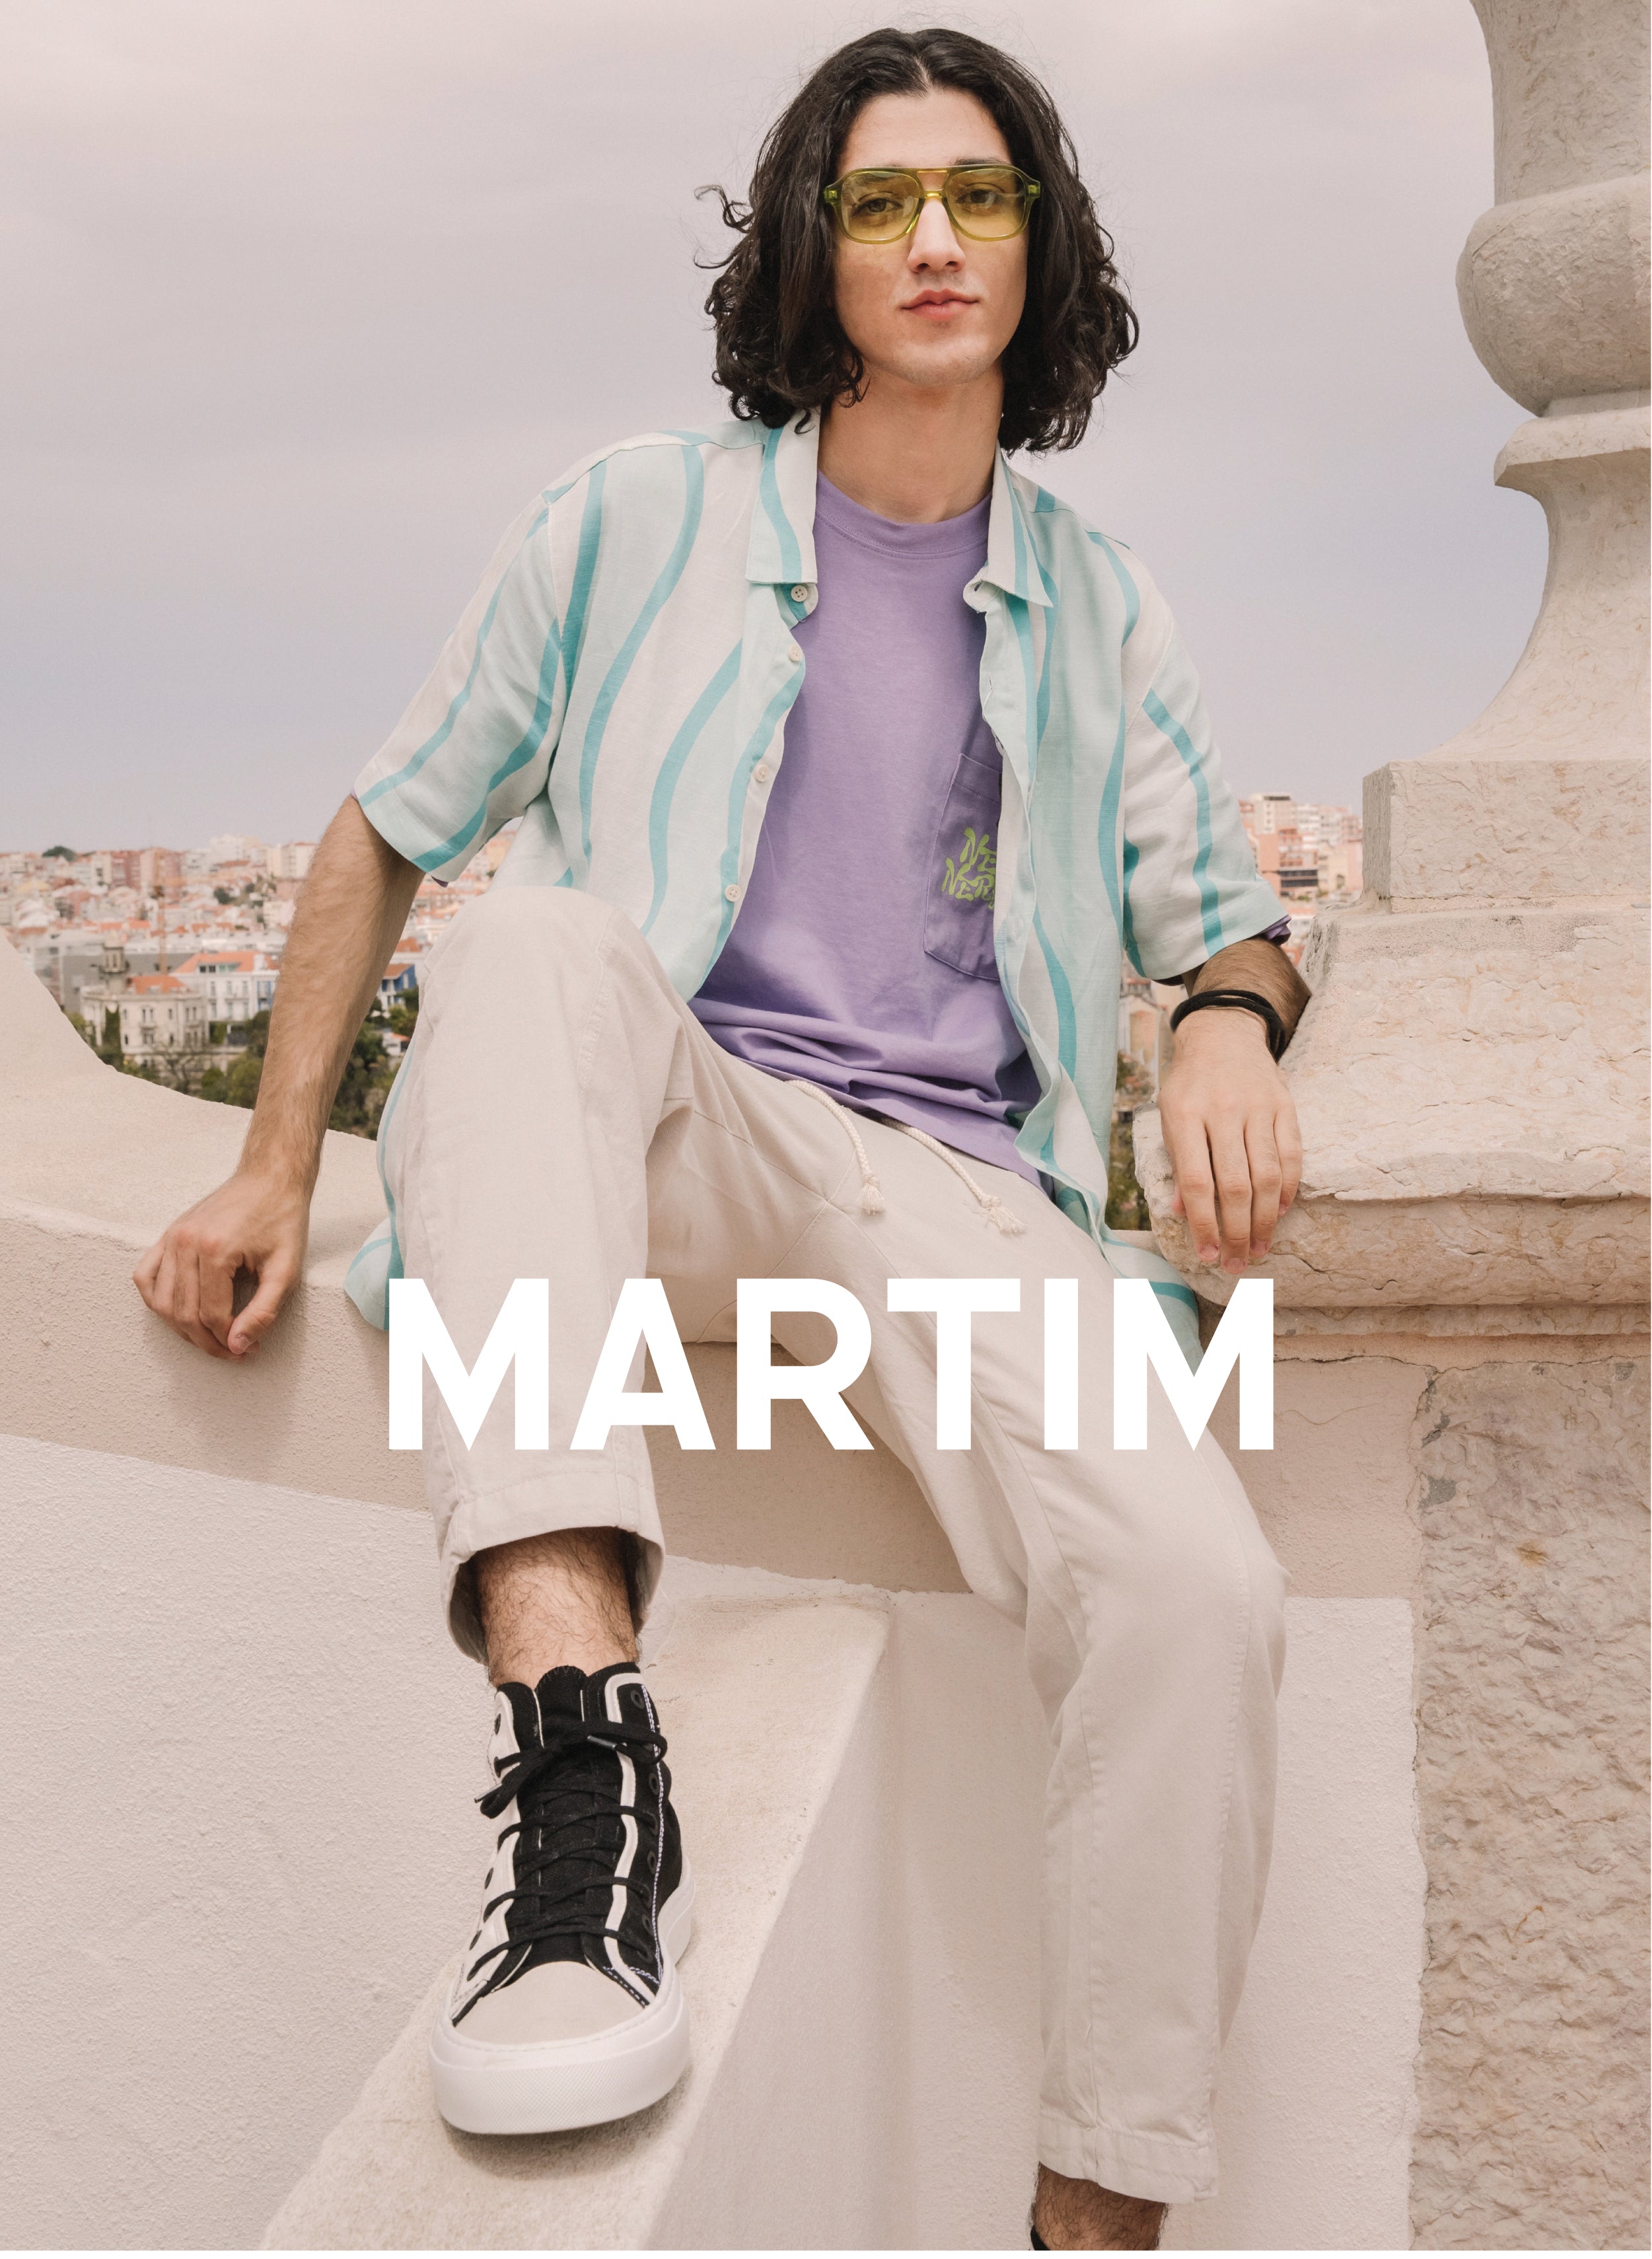 Martim sentado en una pared con un paisaje, vistiendo Diverge sneakers, promoviendo el impacto social y el calzado personalizado.  